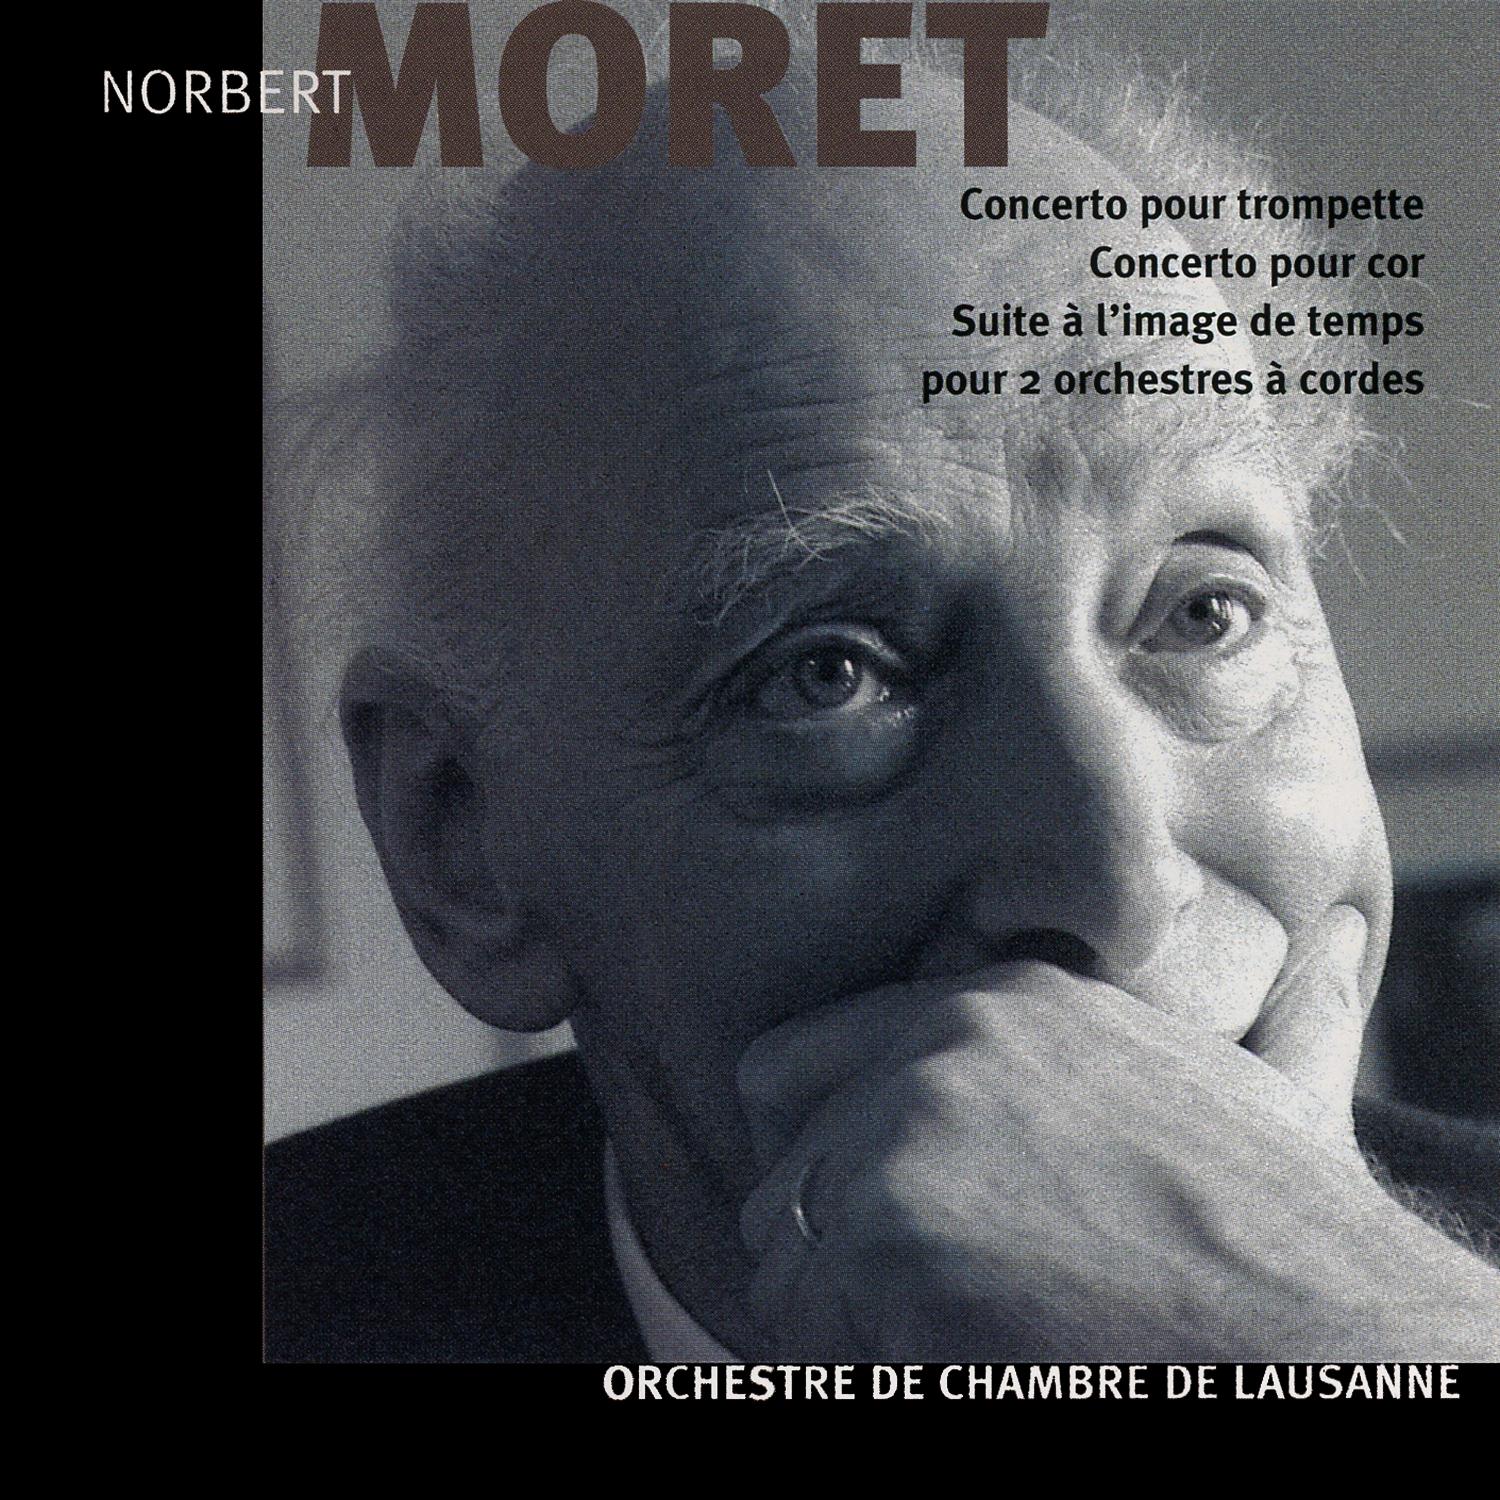 Norbert Moret: Concerto pour trompette, pour cor et suite a l' image de temps